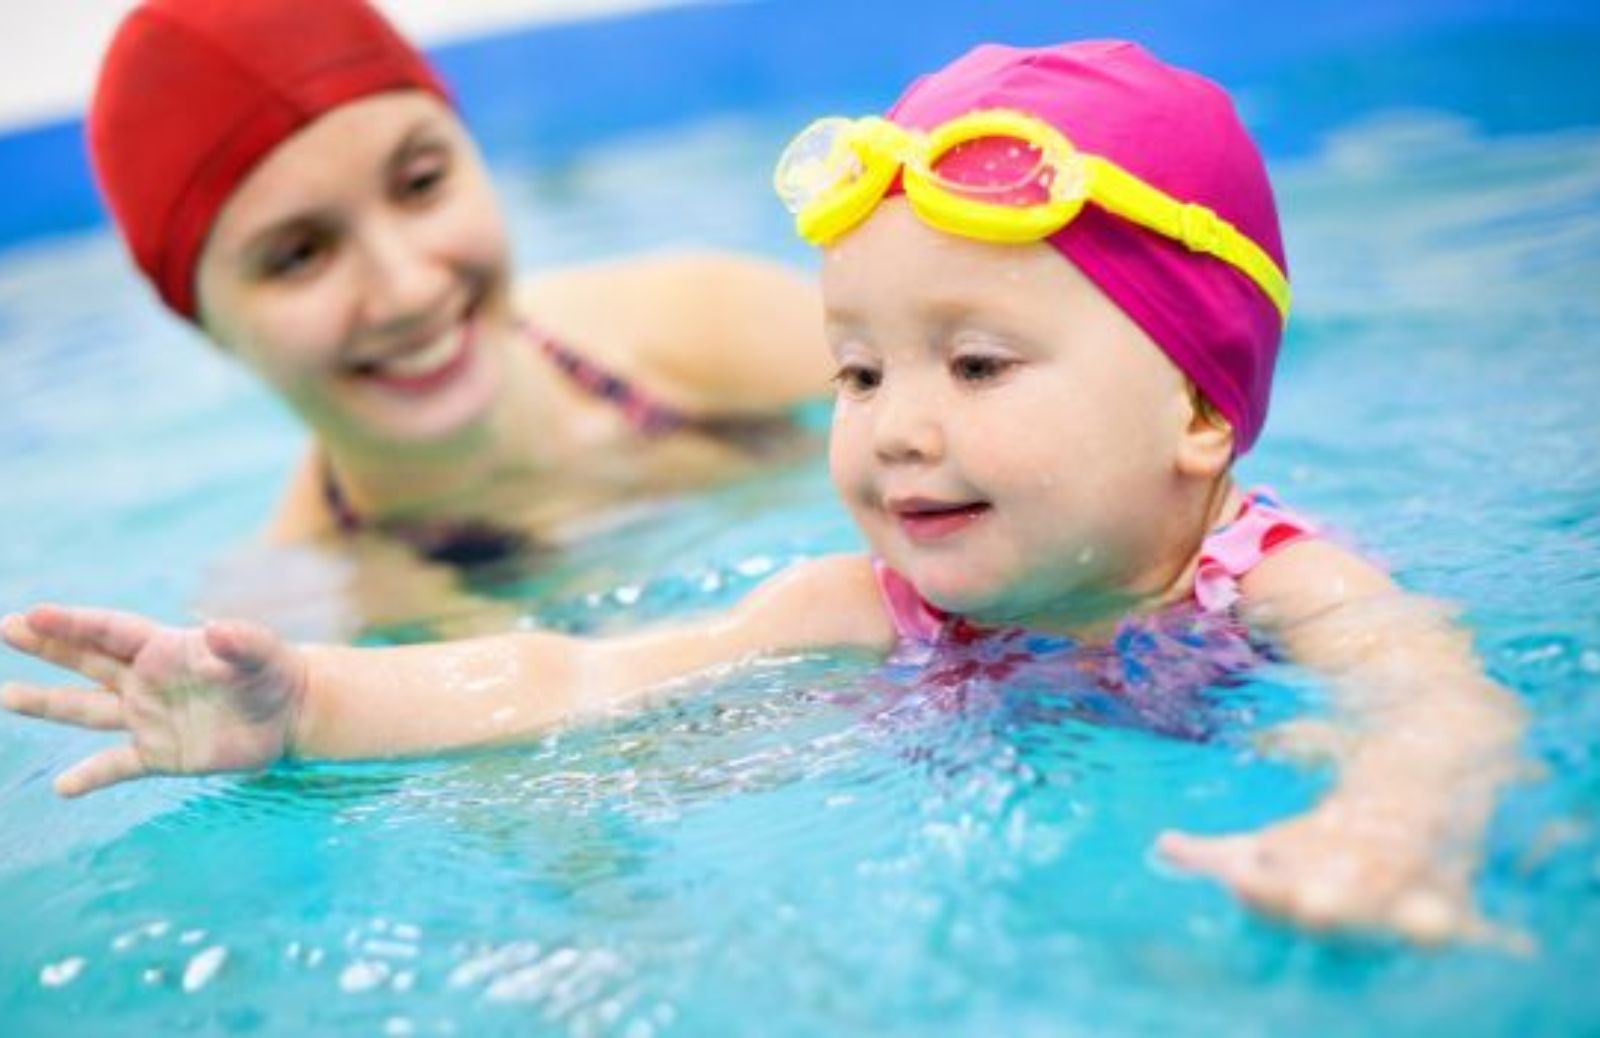 Come godersi la piscina in sicurezza con i bambini